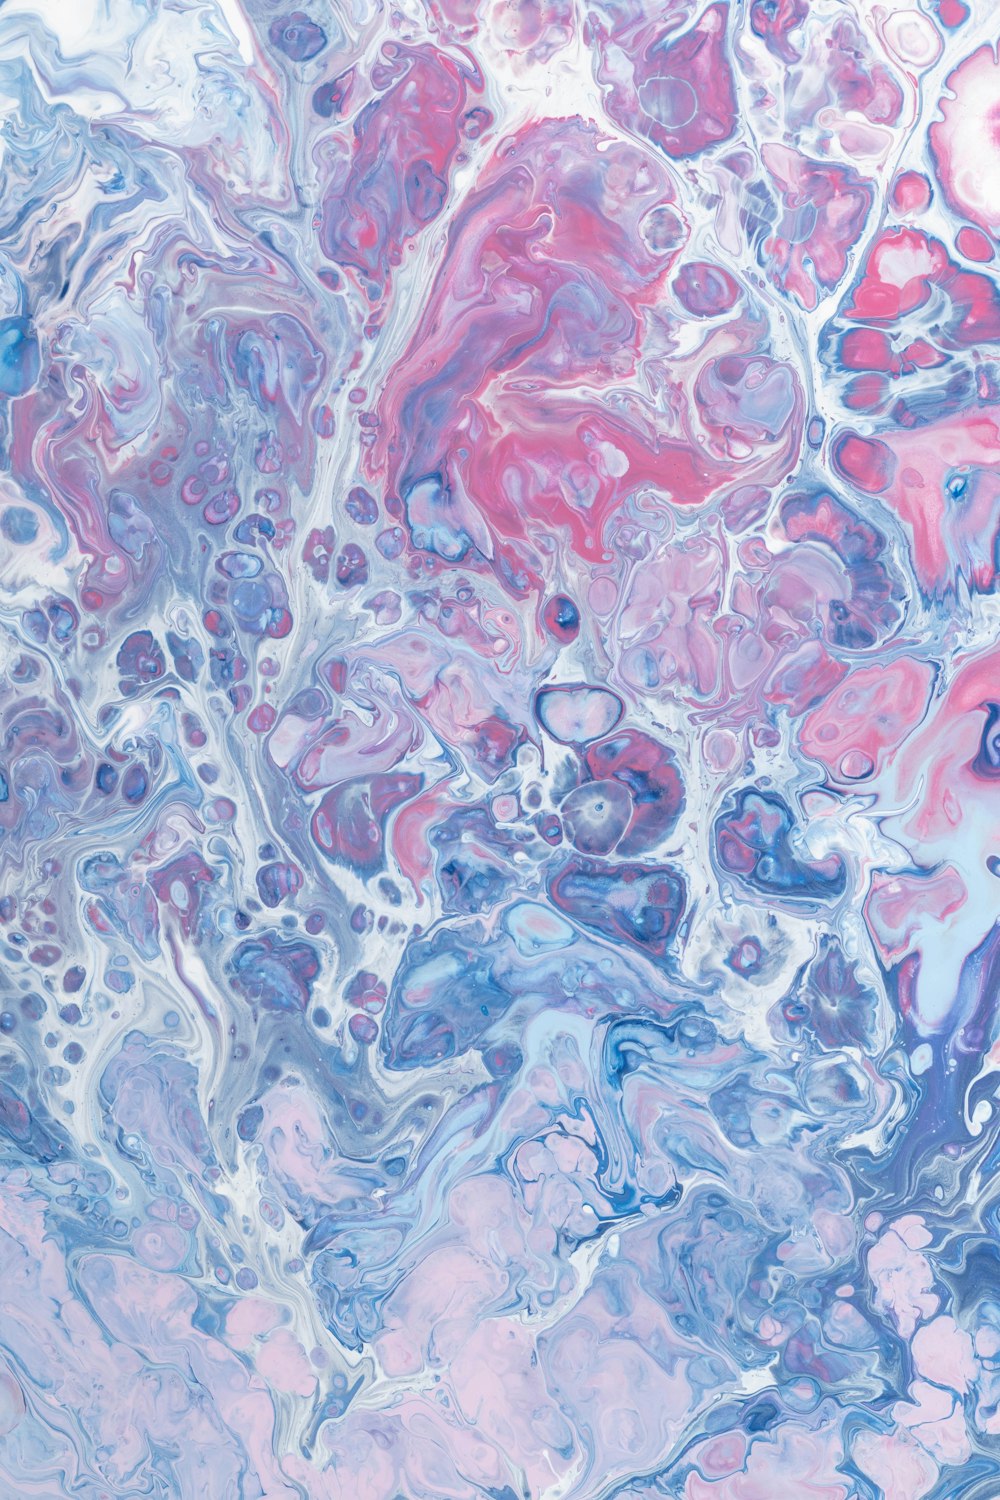 um close up de uma pintura abstrata com cores azul, rosa e roxo